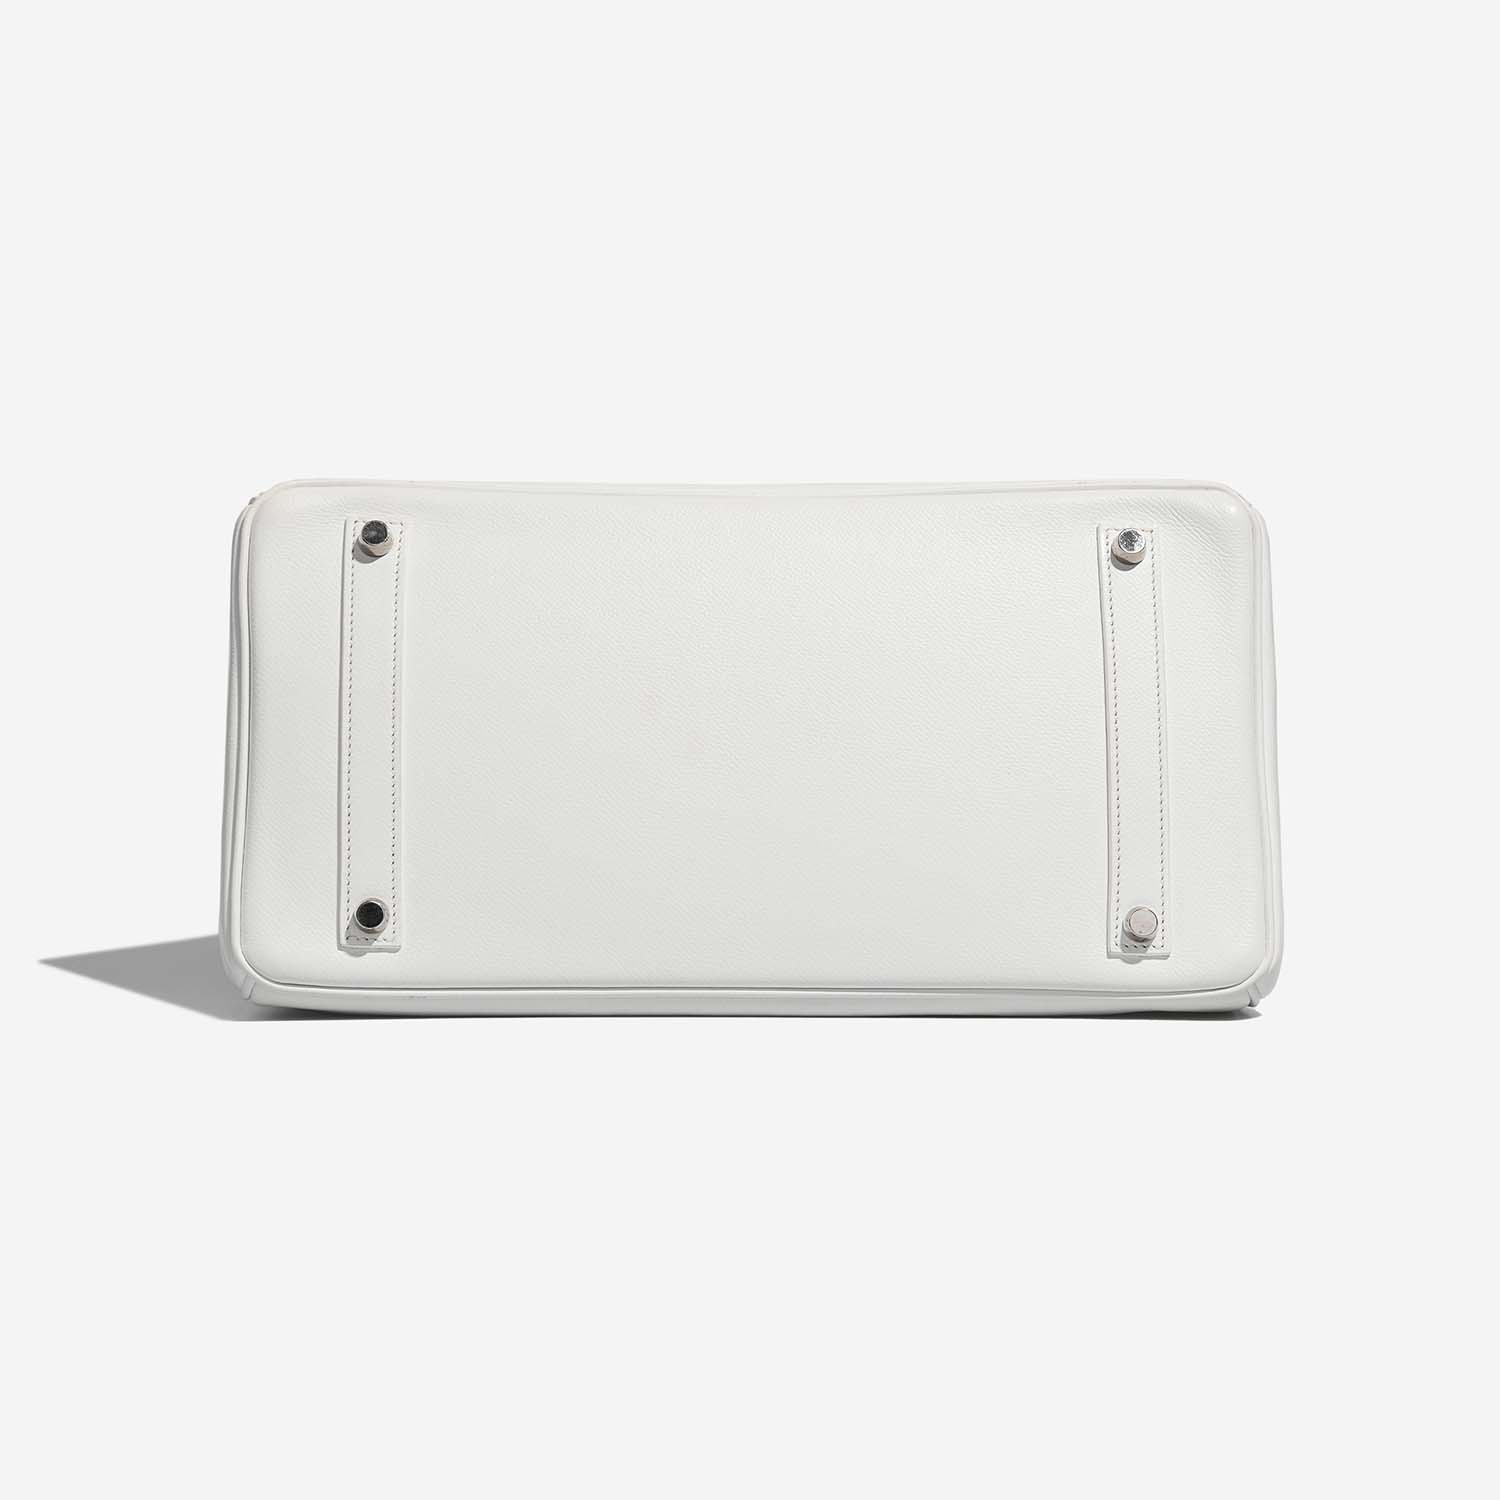 Hermès Birkin 35 White Bottom | Verkaufen Sie Ihre Designer-Tasche auf Saclab.com